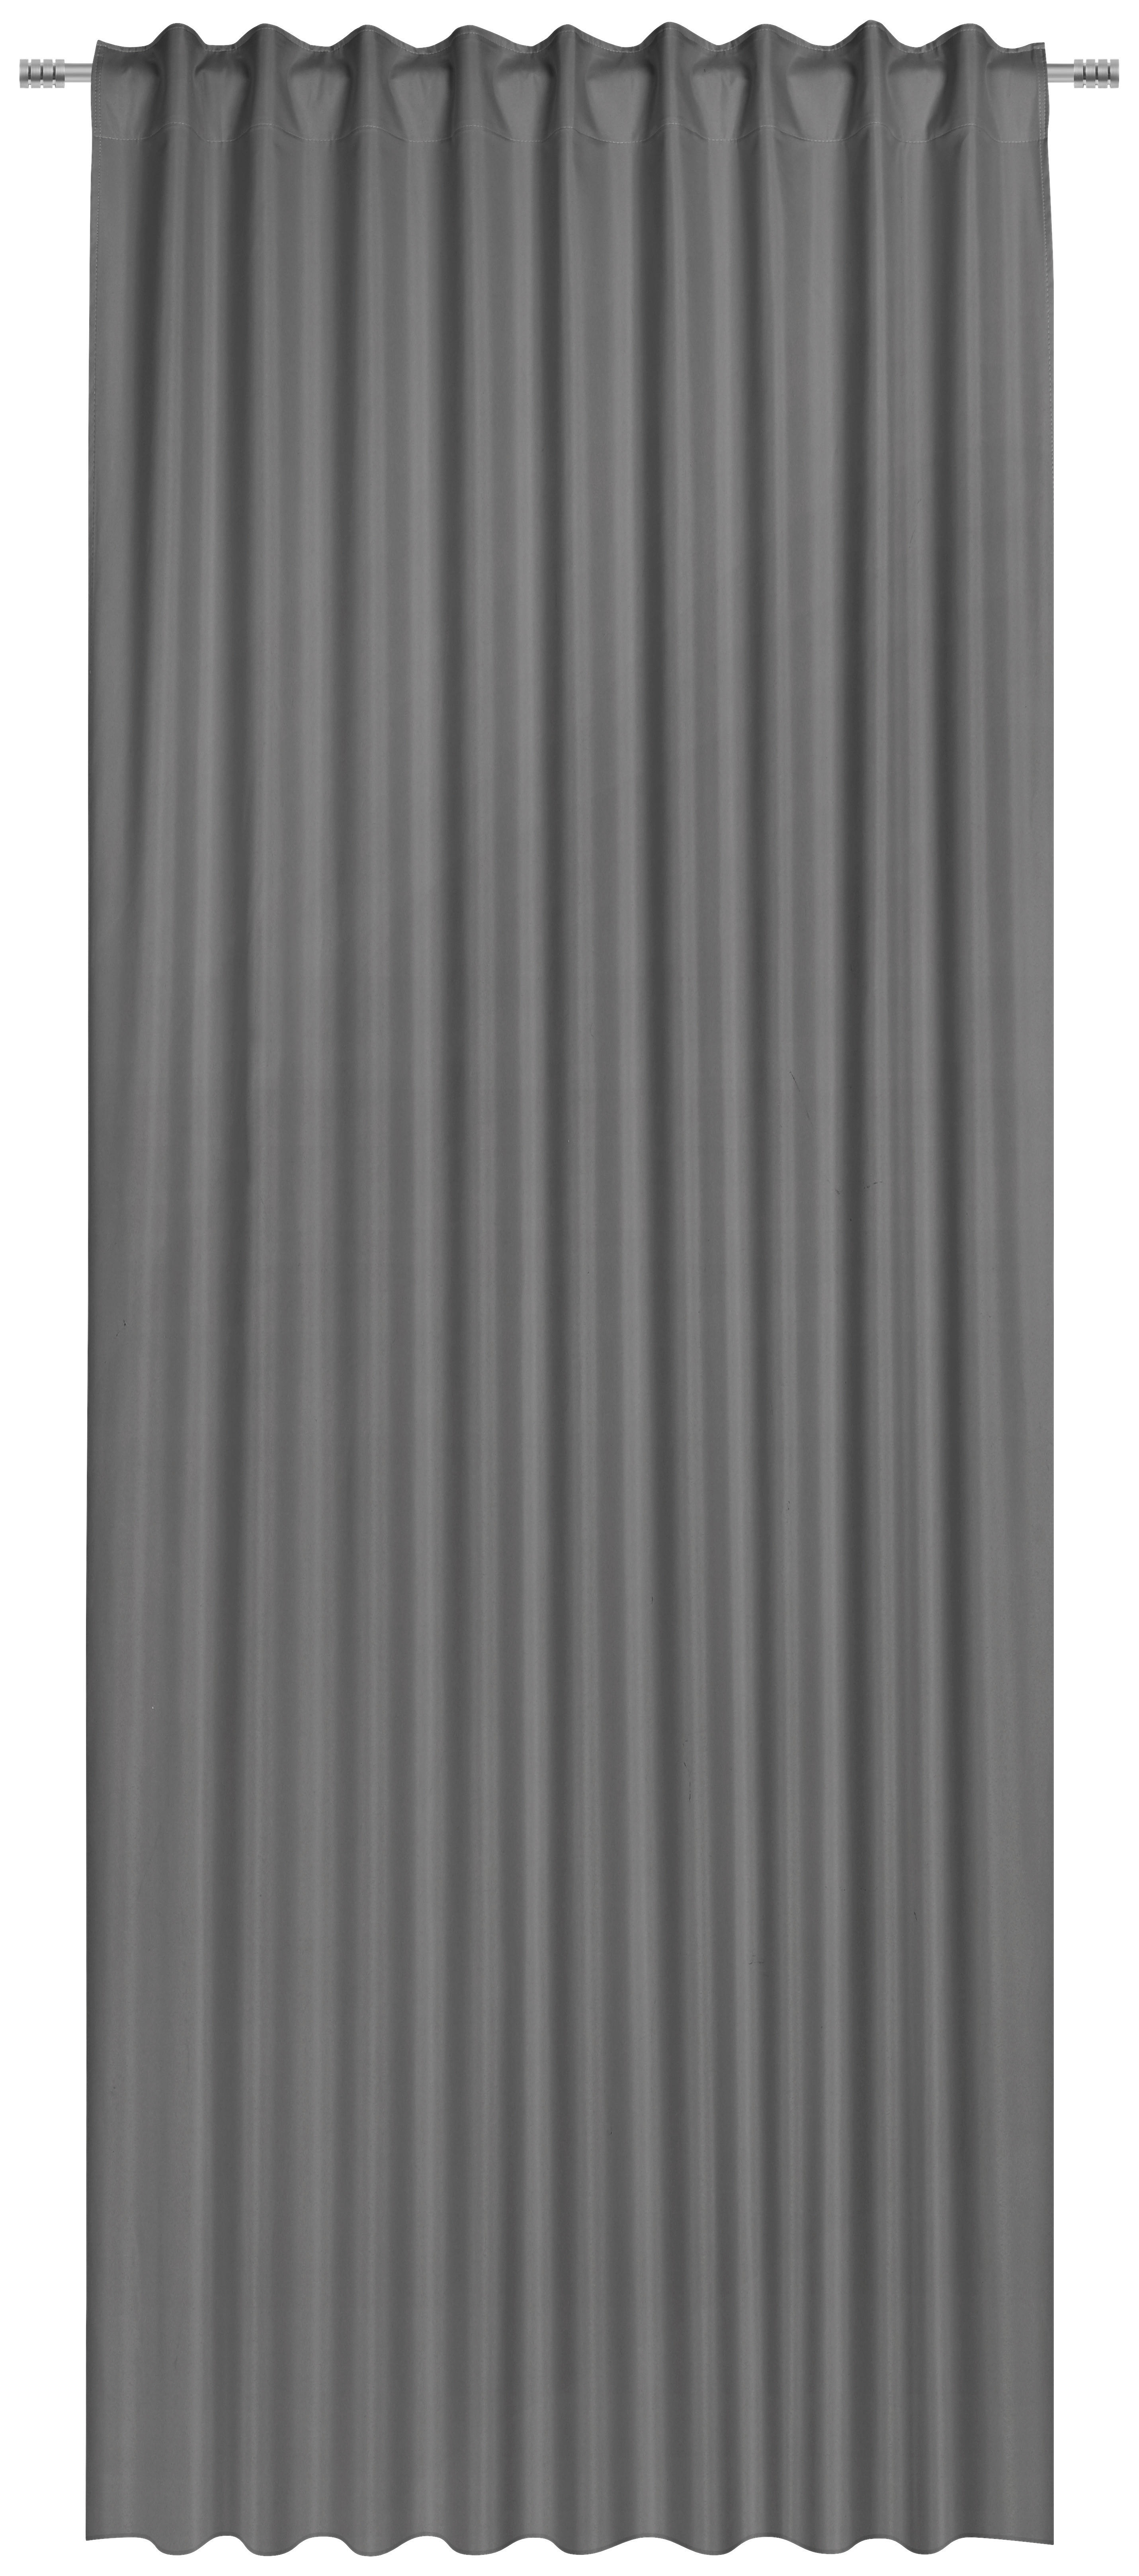 DRAPERIE GATA CONFECȚIONATĂ black-out (nu permite trecerea luminii)  - gri, Basics, textil (135/300cm) - Esposa